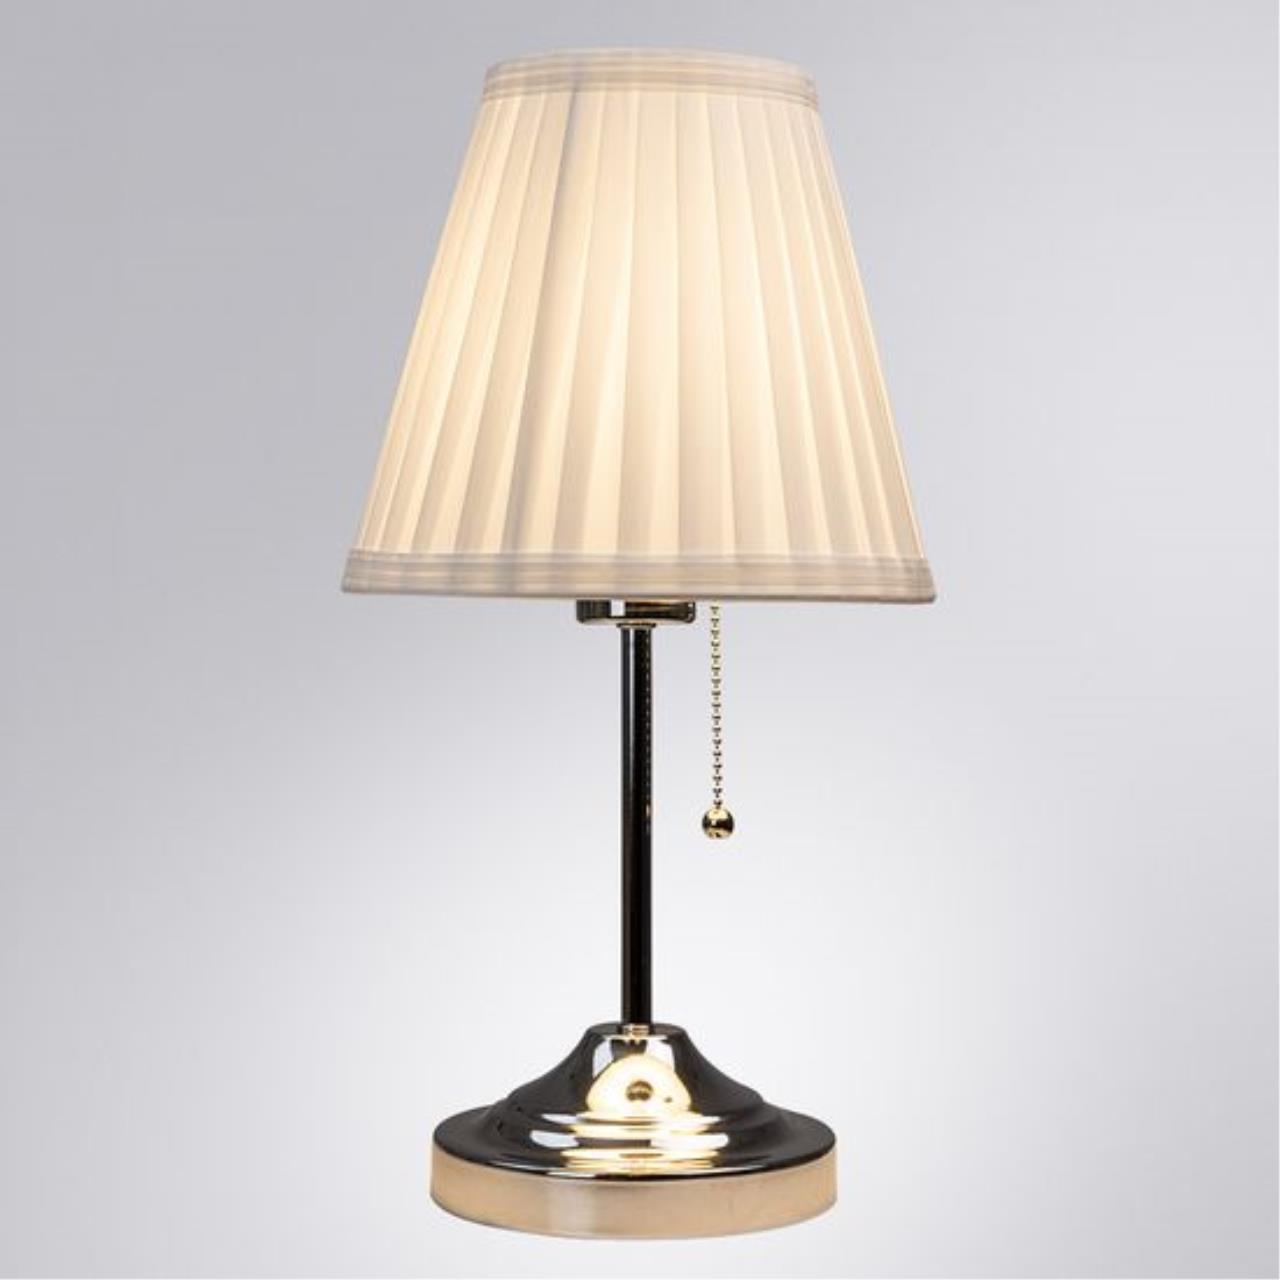 Интерьерная настольная лампа Arte lamp A5039TL-1CC